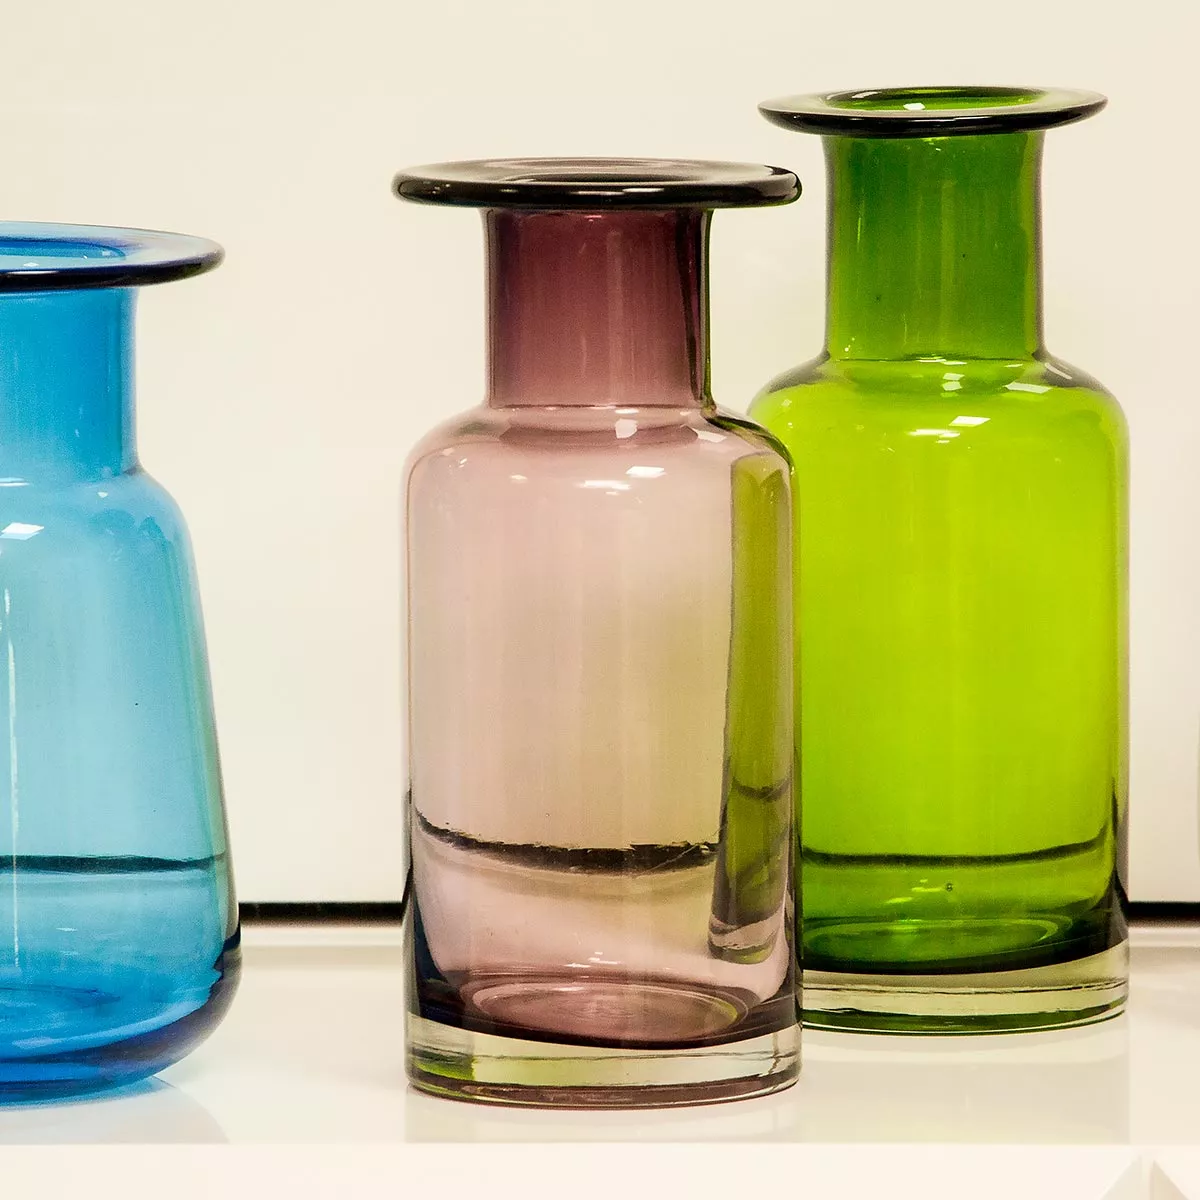 Segunda imagem para pesquisa de vasos decorativos sala